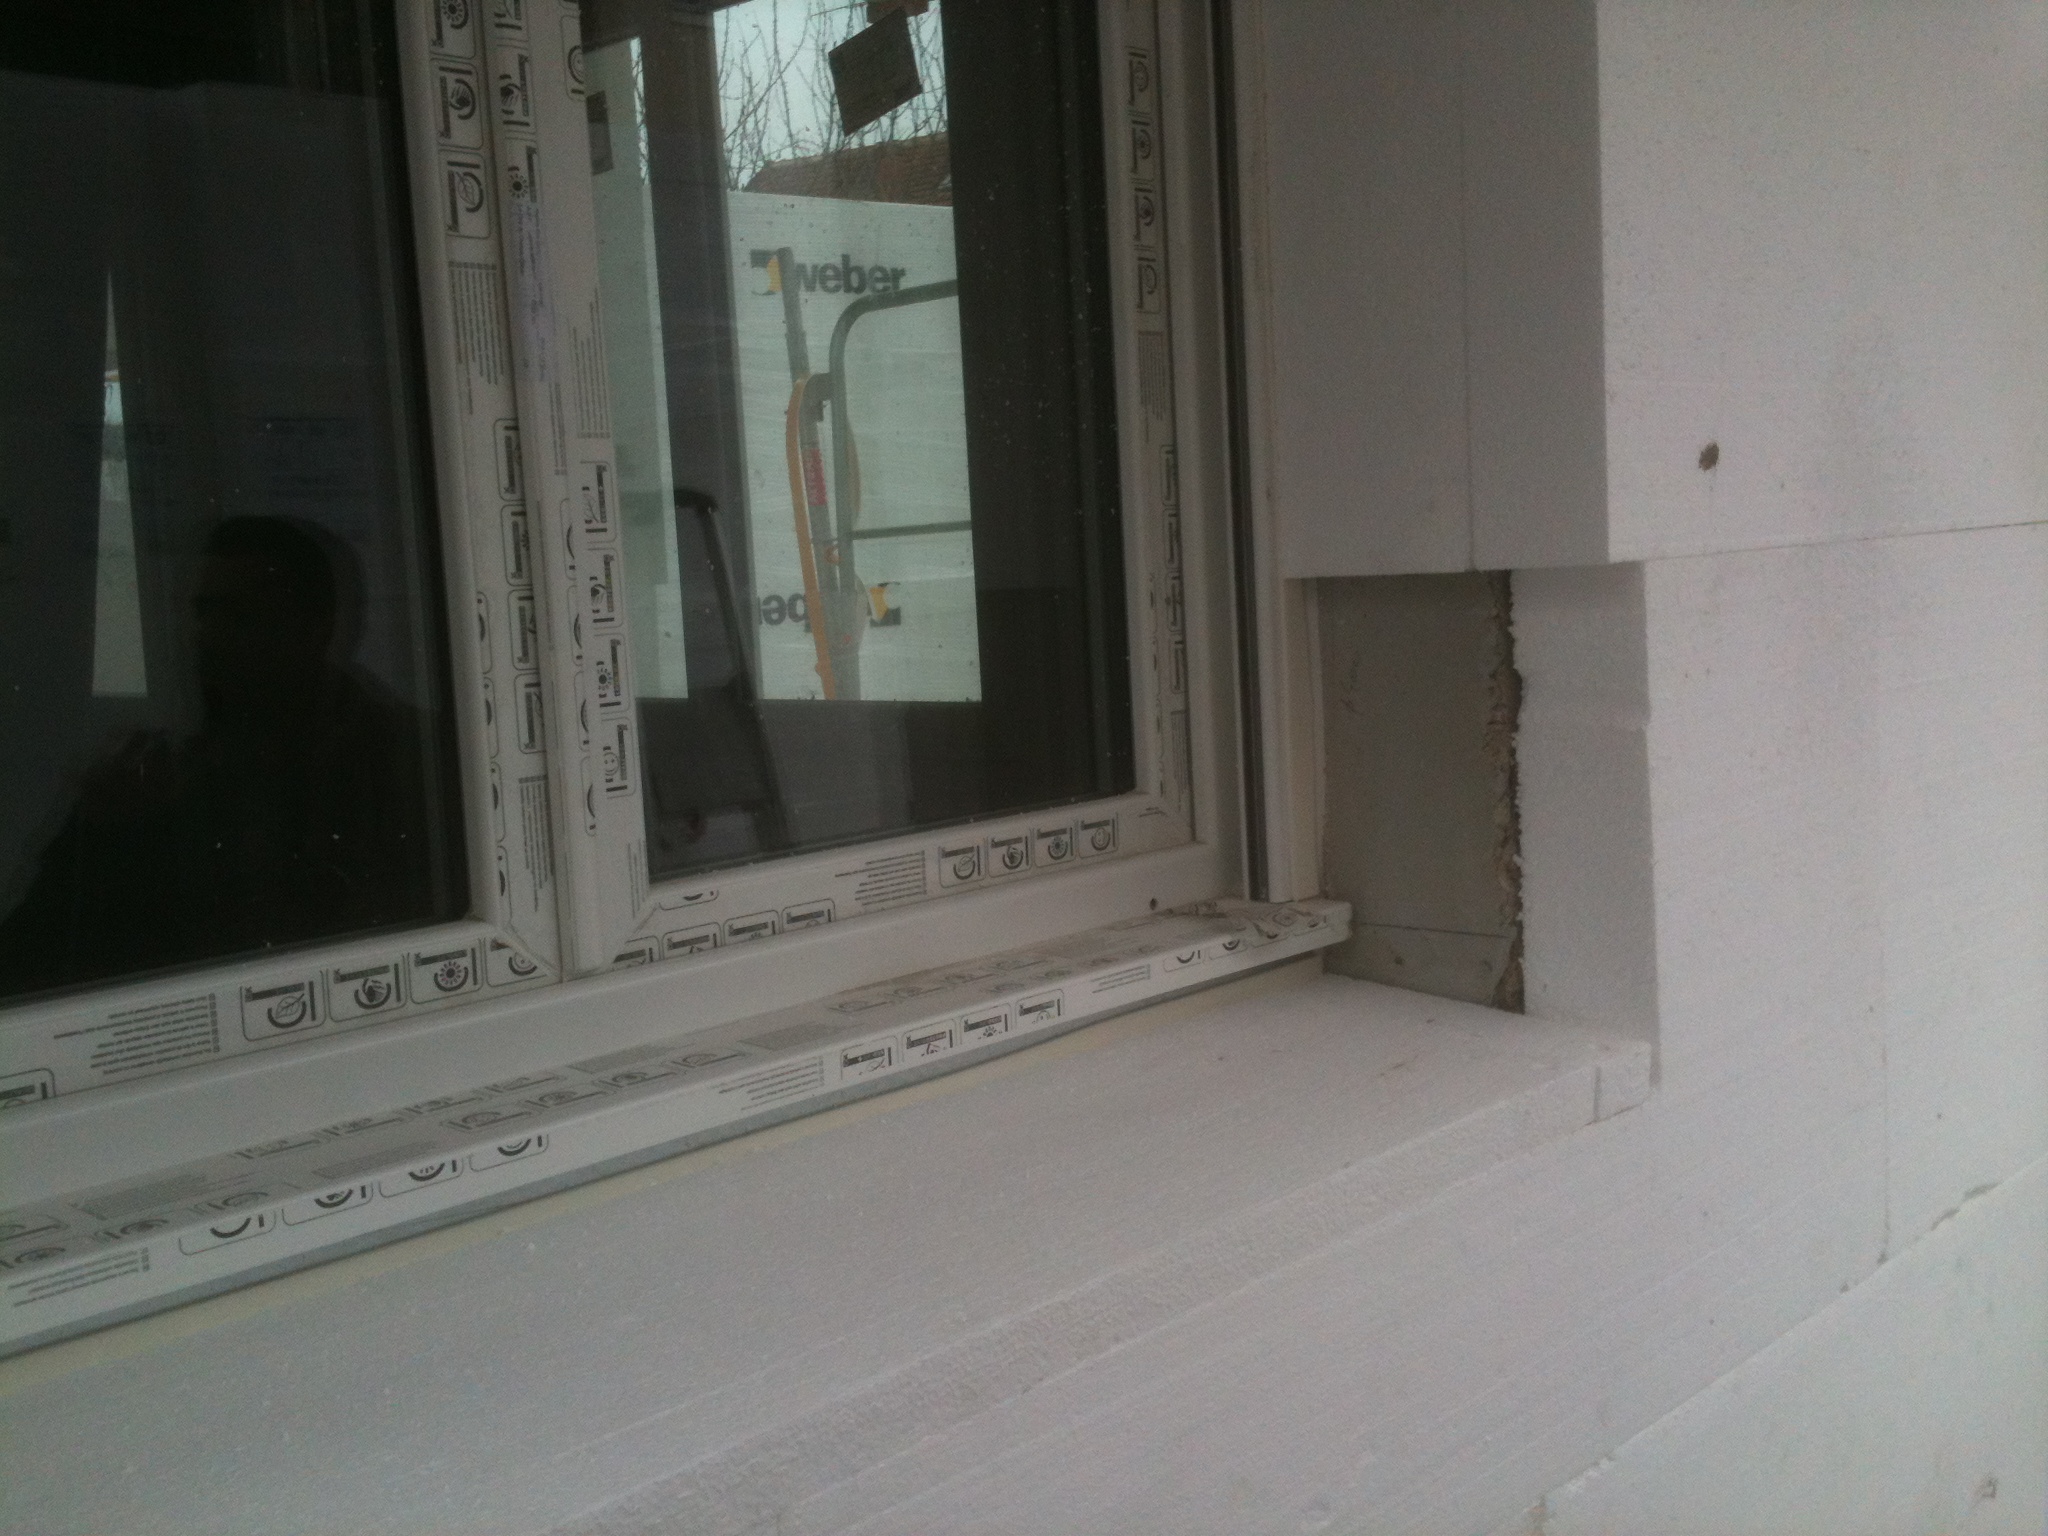 Fenêtre PVC blanche